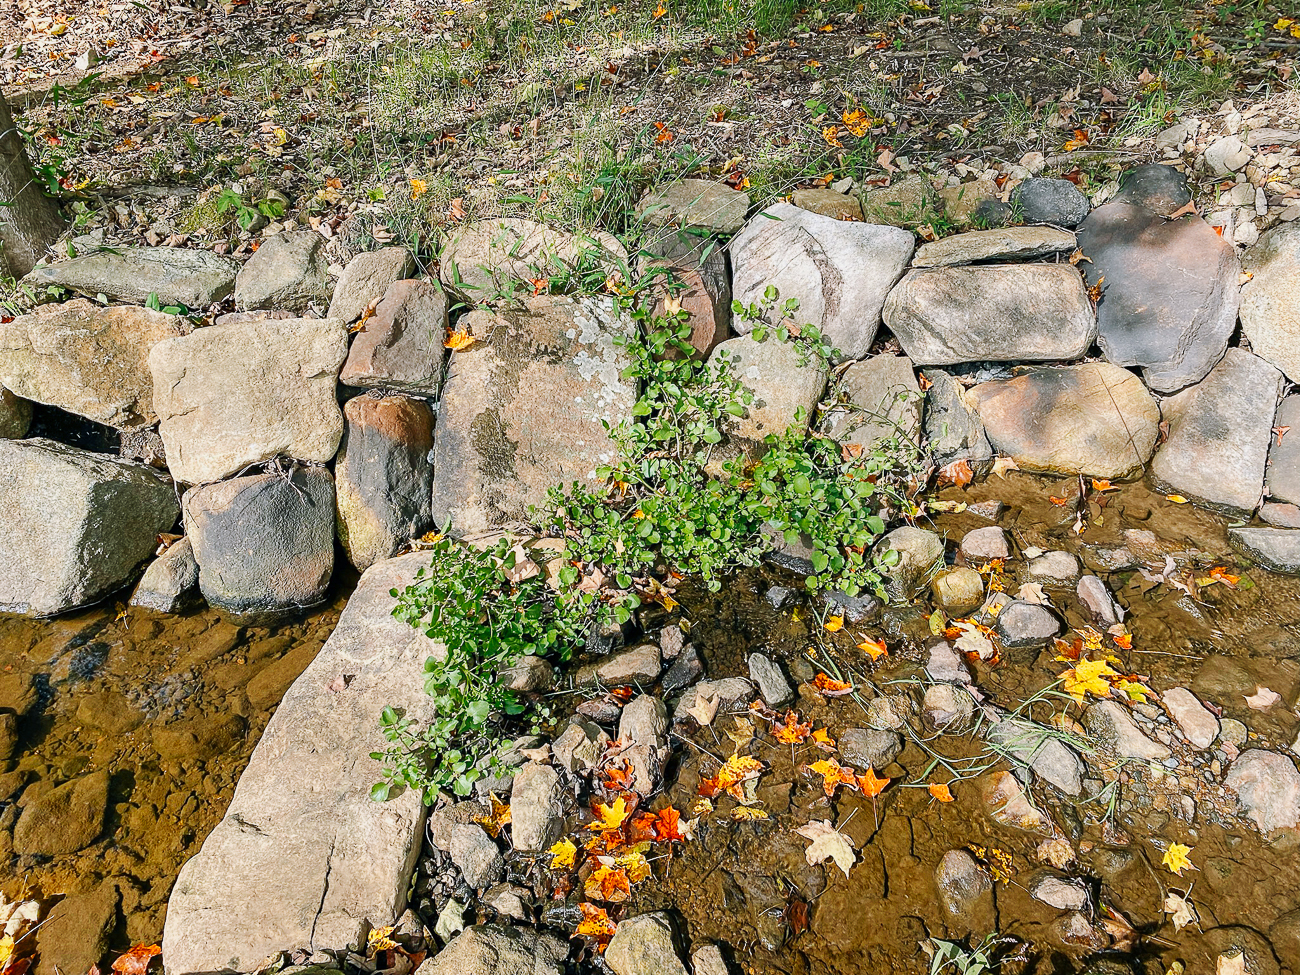 watercress planted amongst rocks